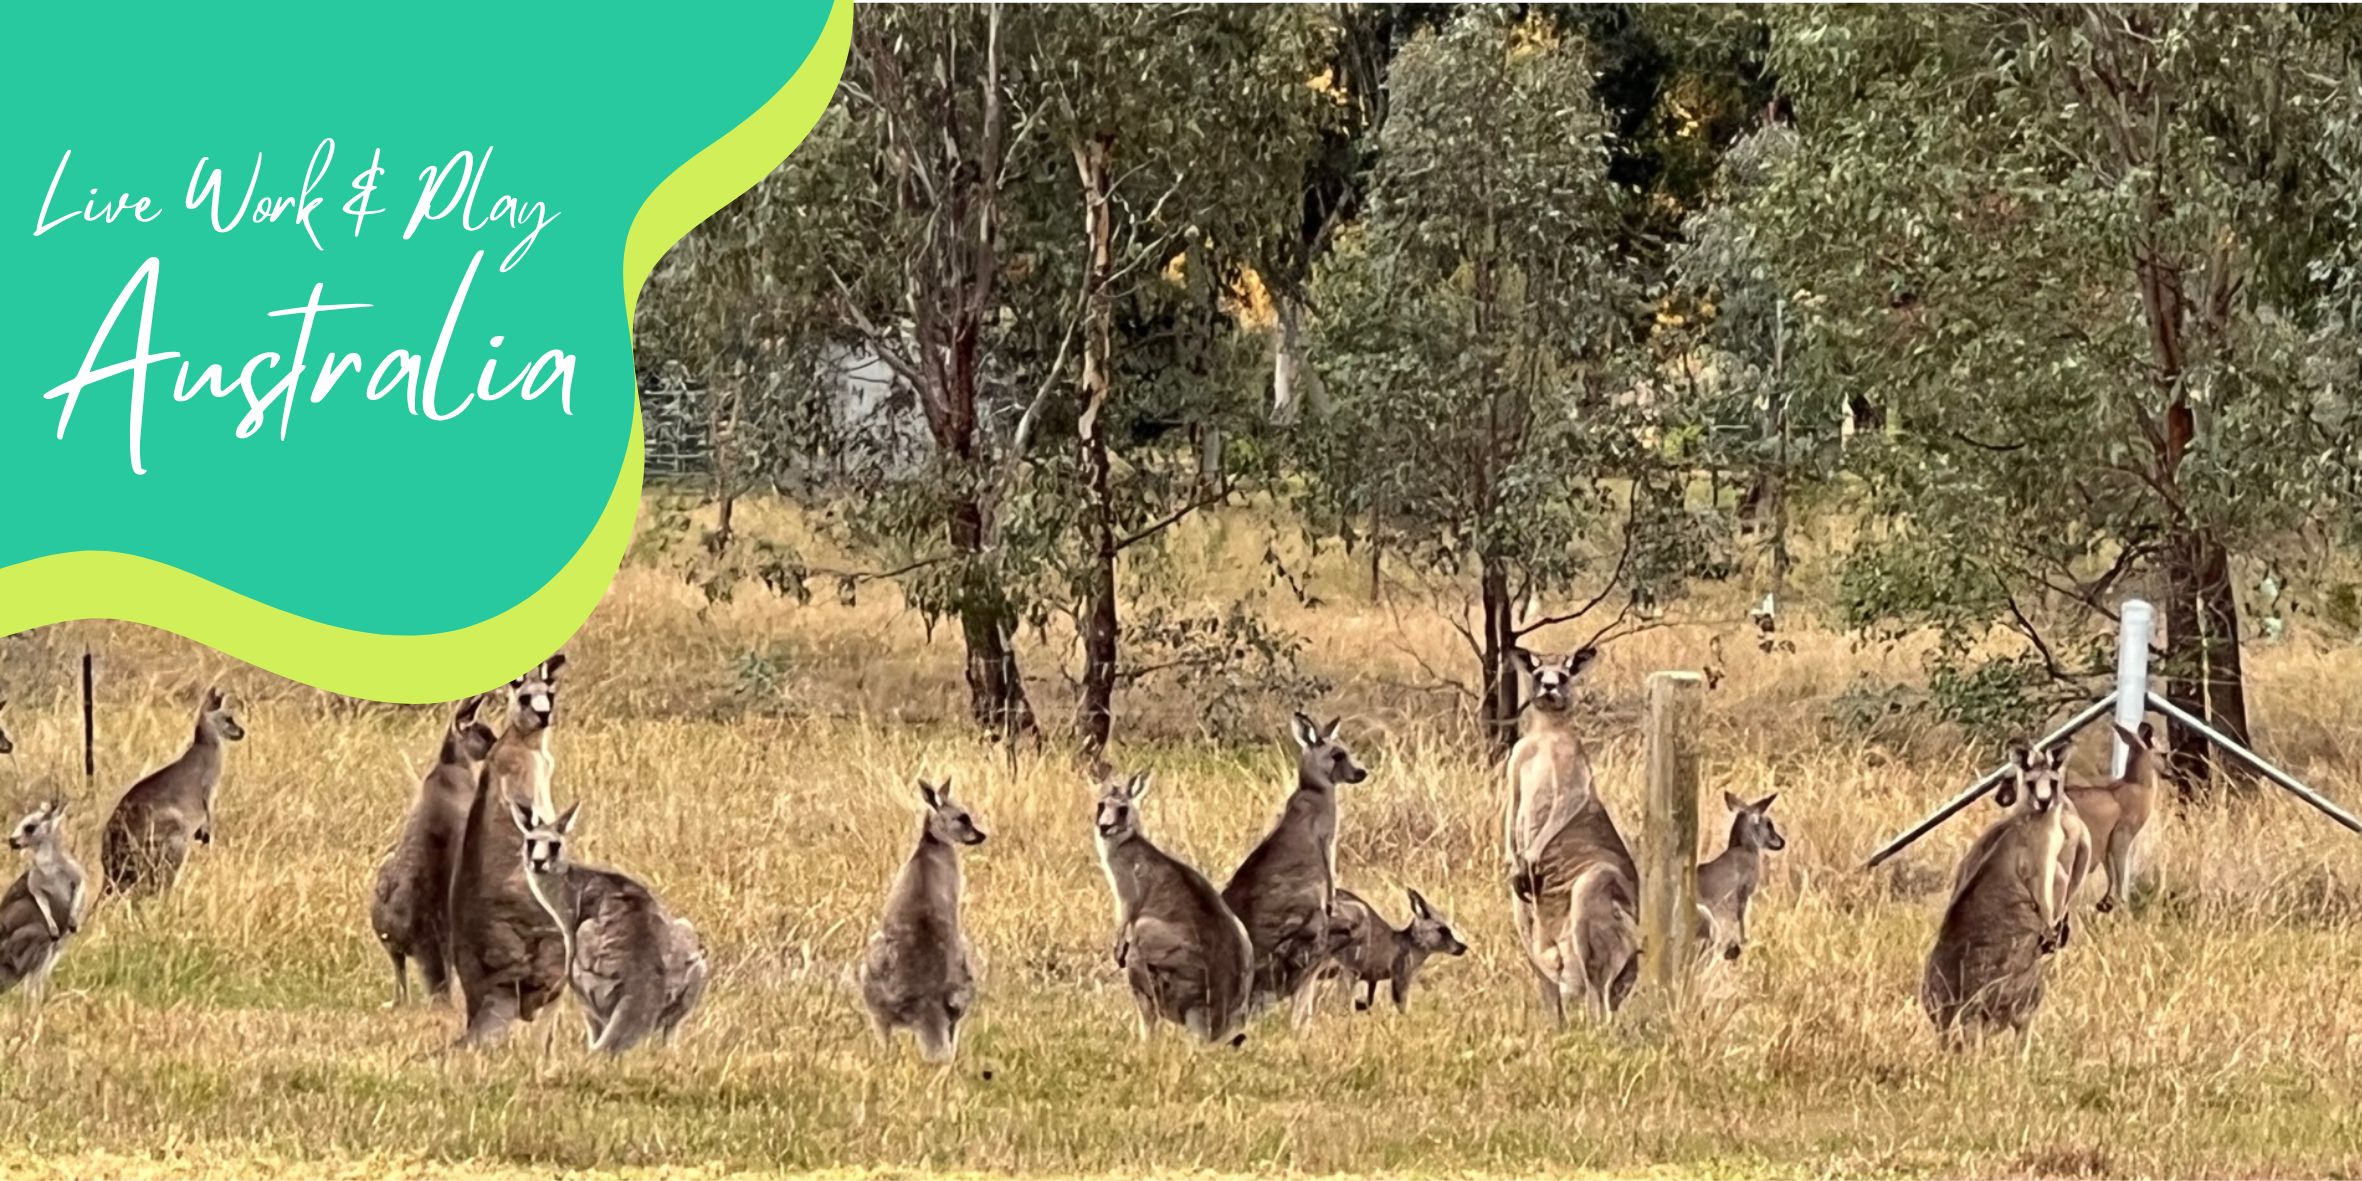 Kangaroos in a paddock in Australia.